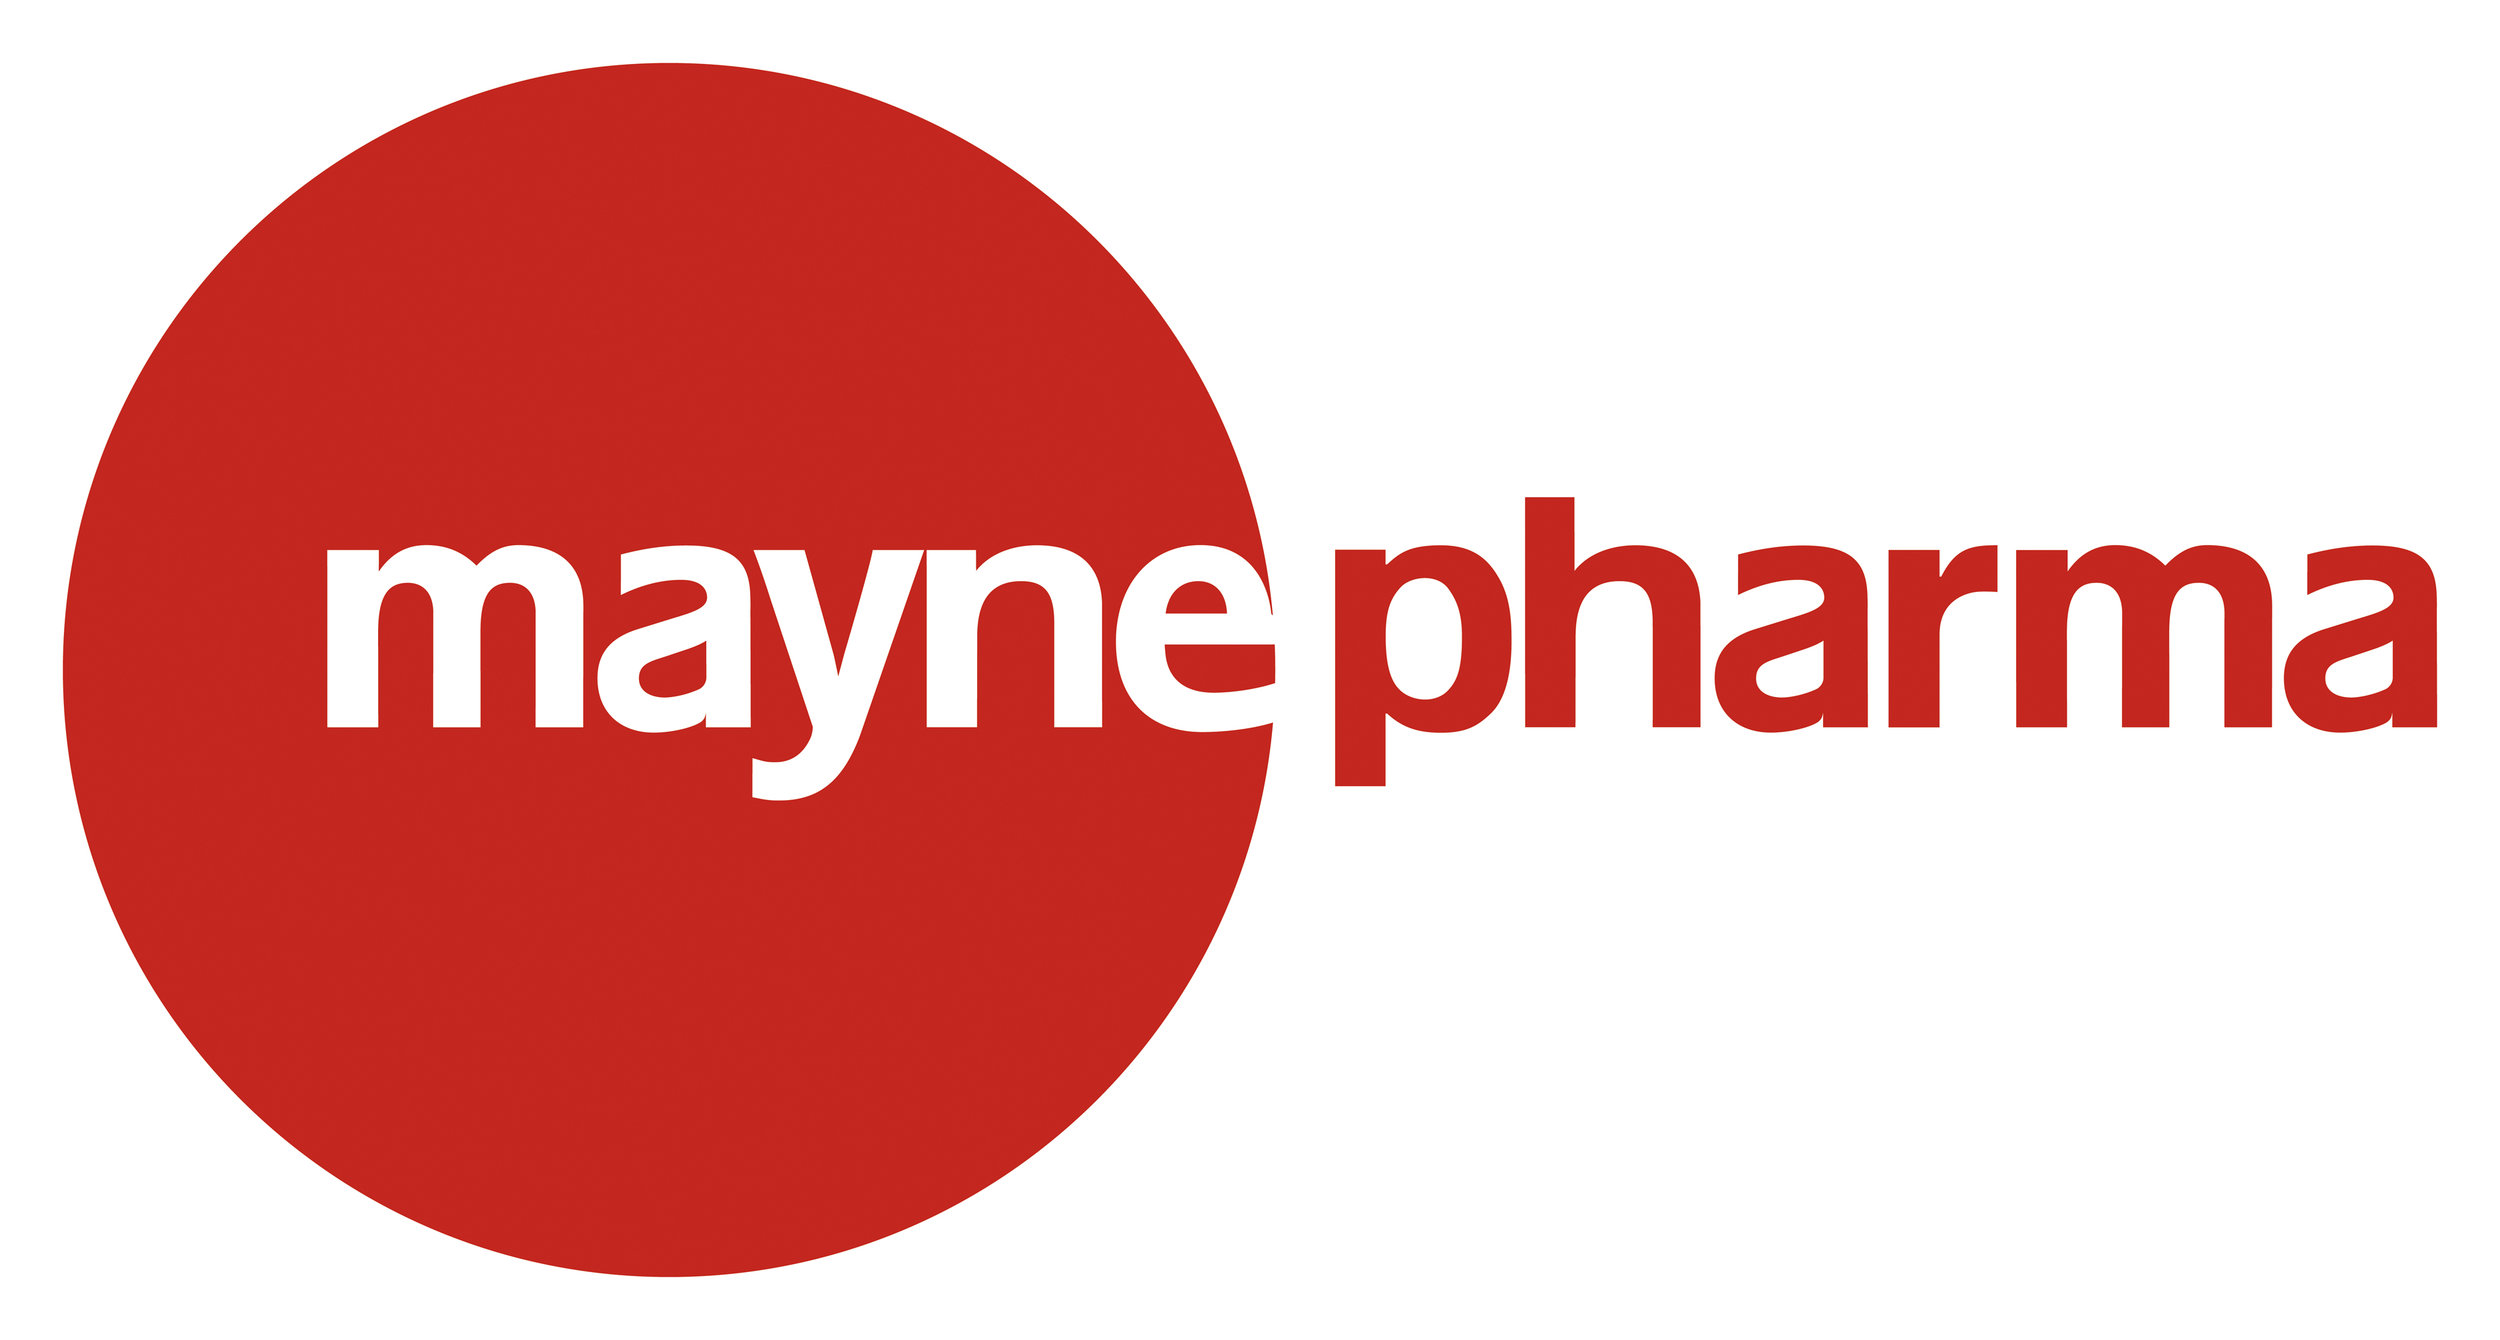 Mayne Pharma Logo.jpg